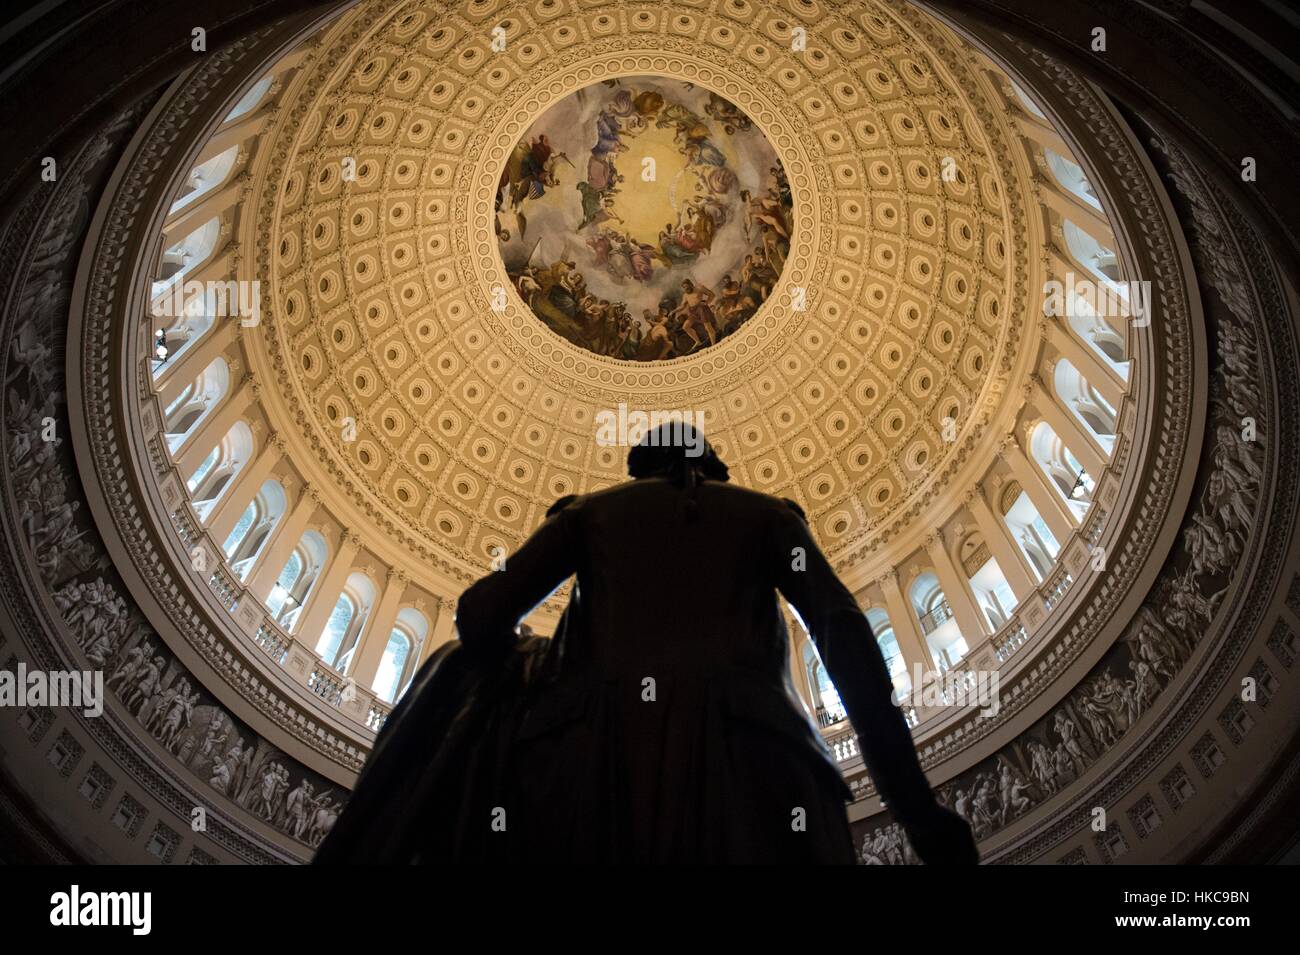 Une statue de George Washington qui se profile sous la rotonde du Capitole des États-Unis au cours de la 58e Cérémonie d'investiture de Donald Trump, 20 janvier 2017 à Washington, DC. Banque D'Images